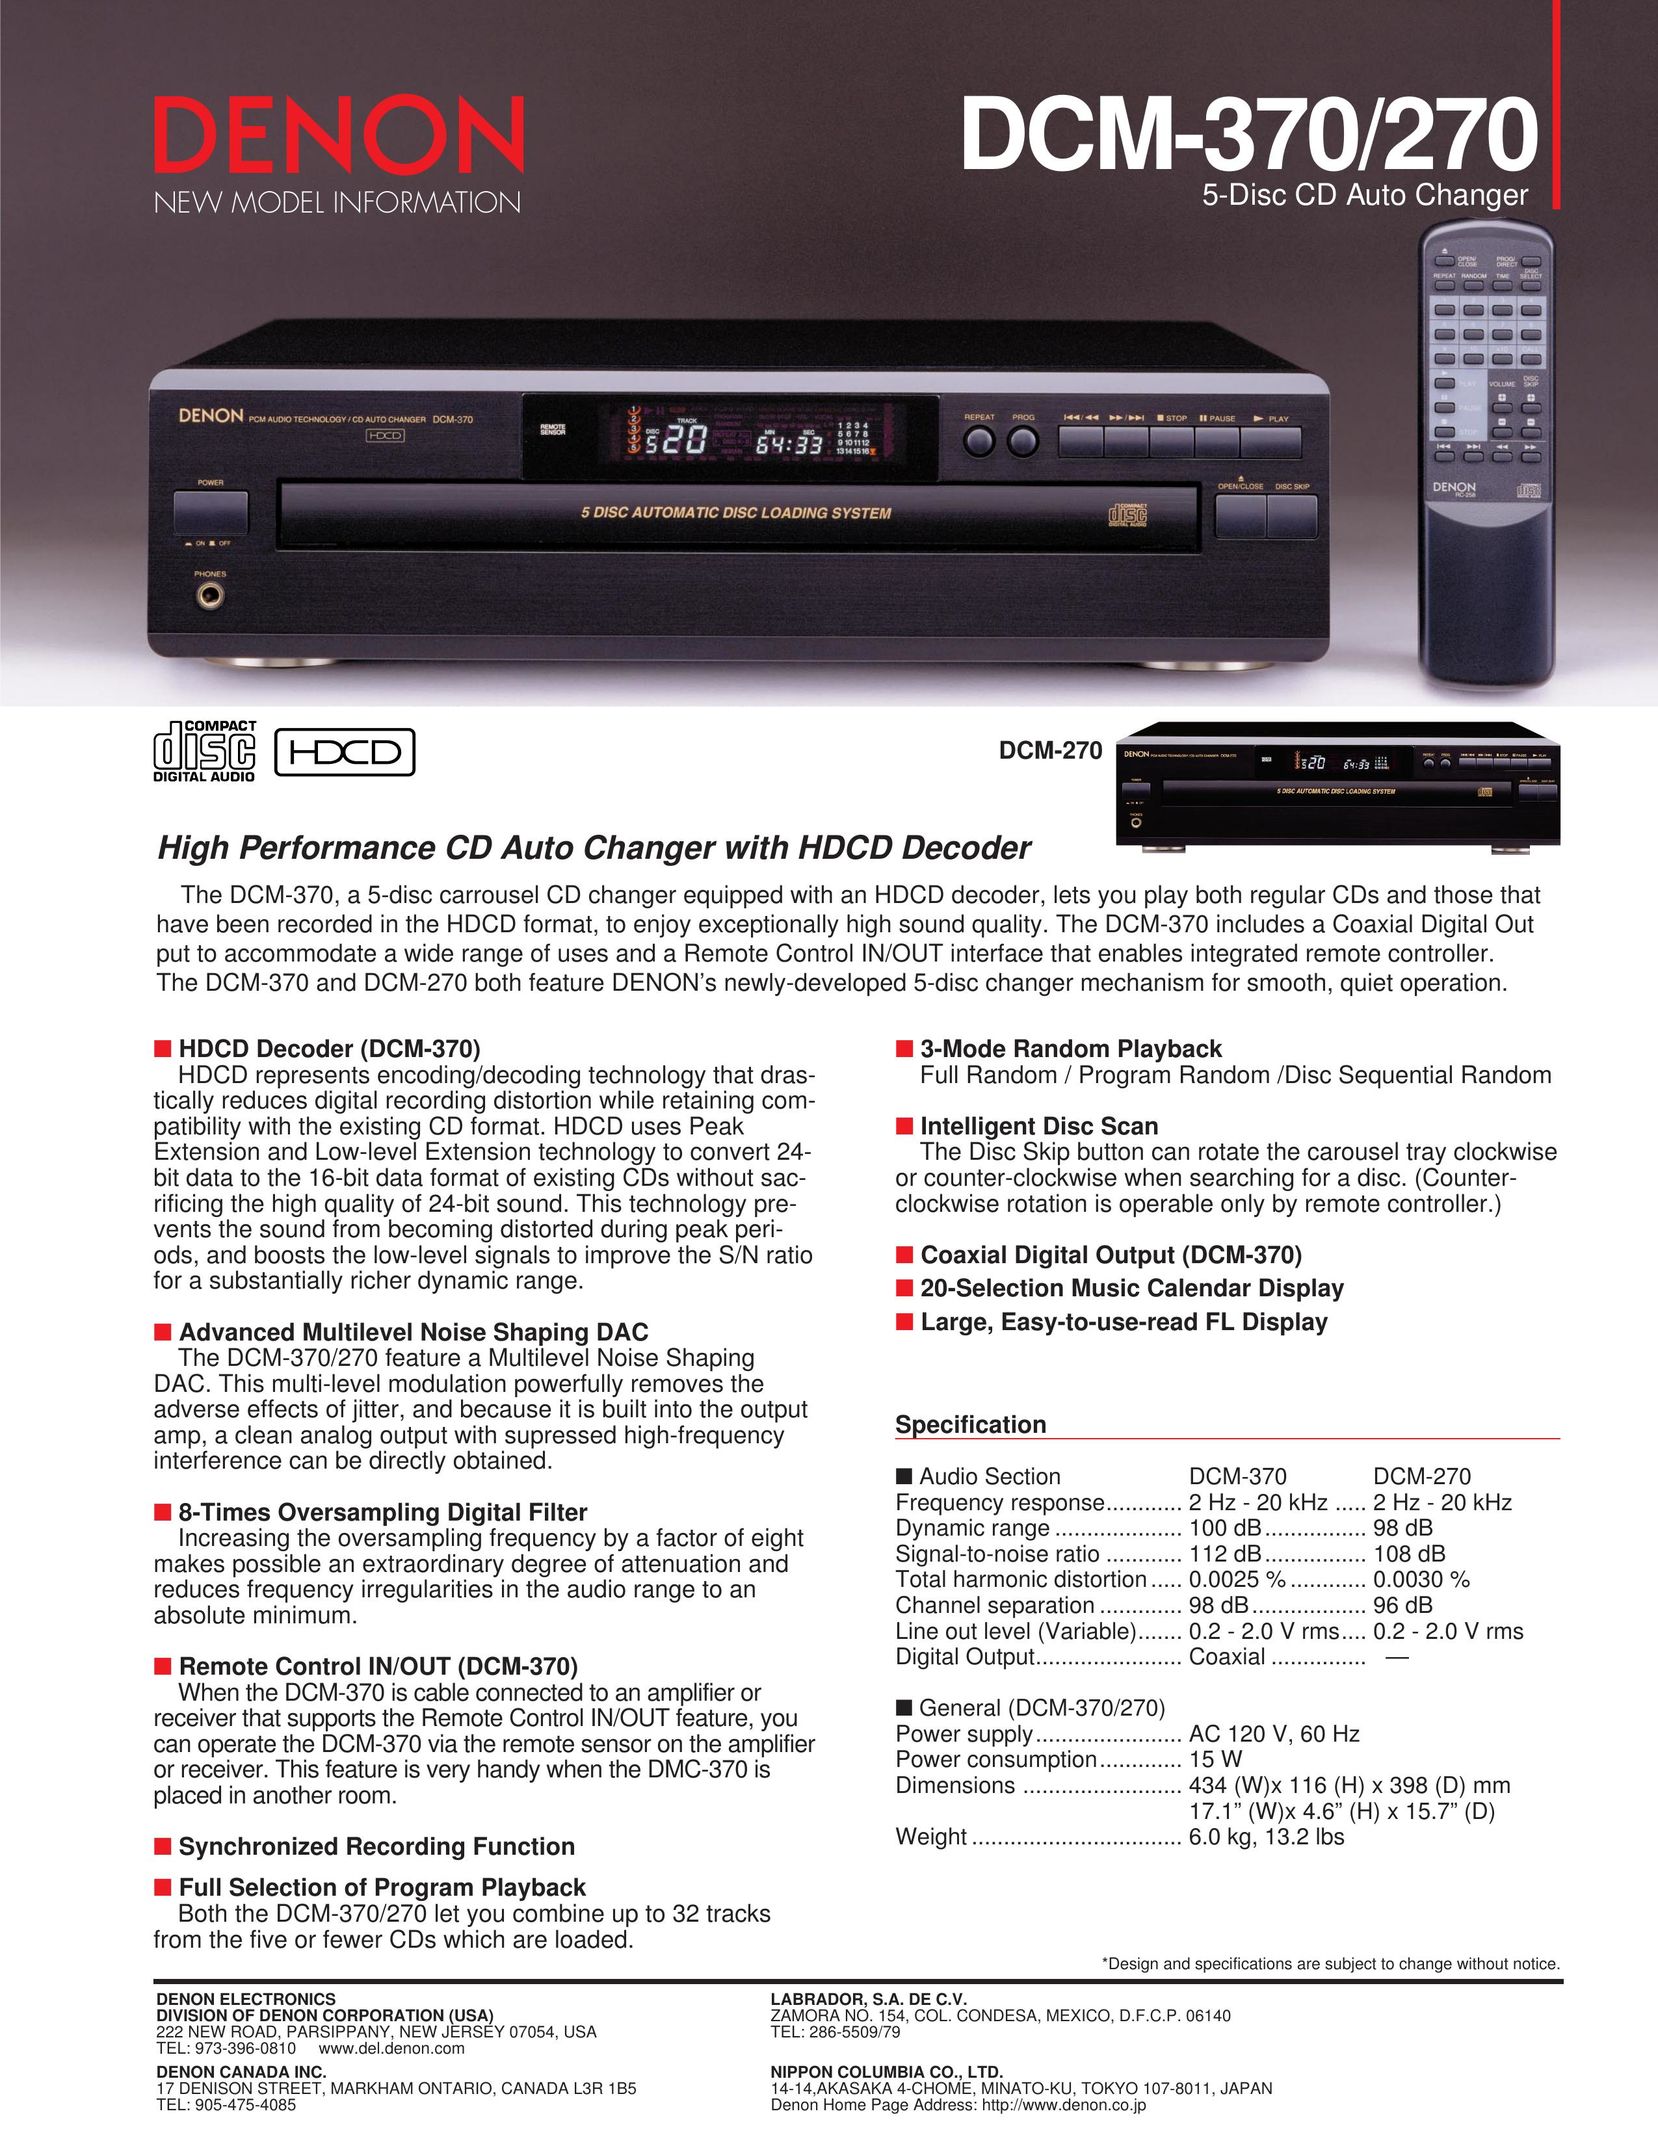 Denon DCM-370 CD Player User Manual